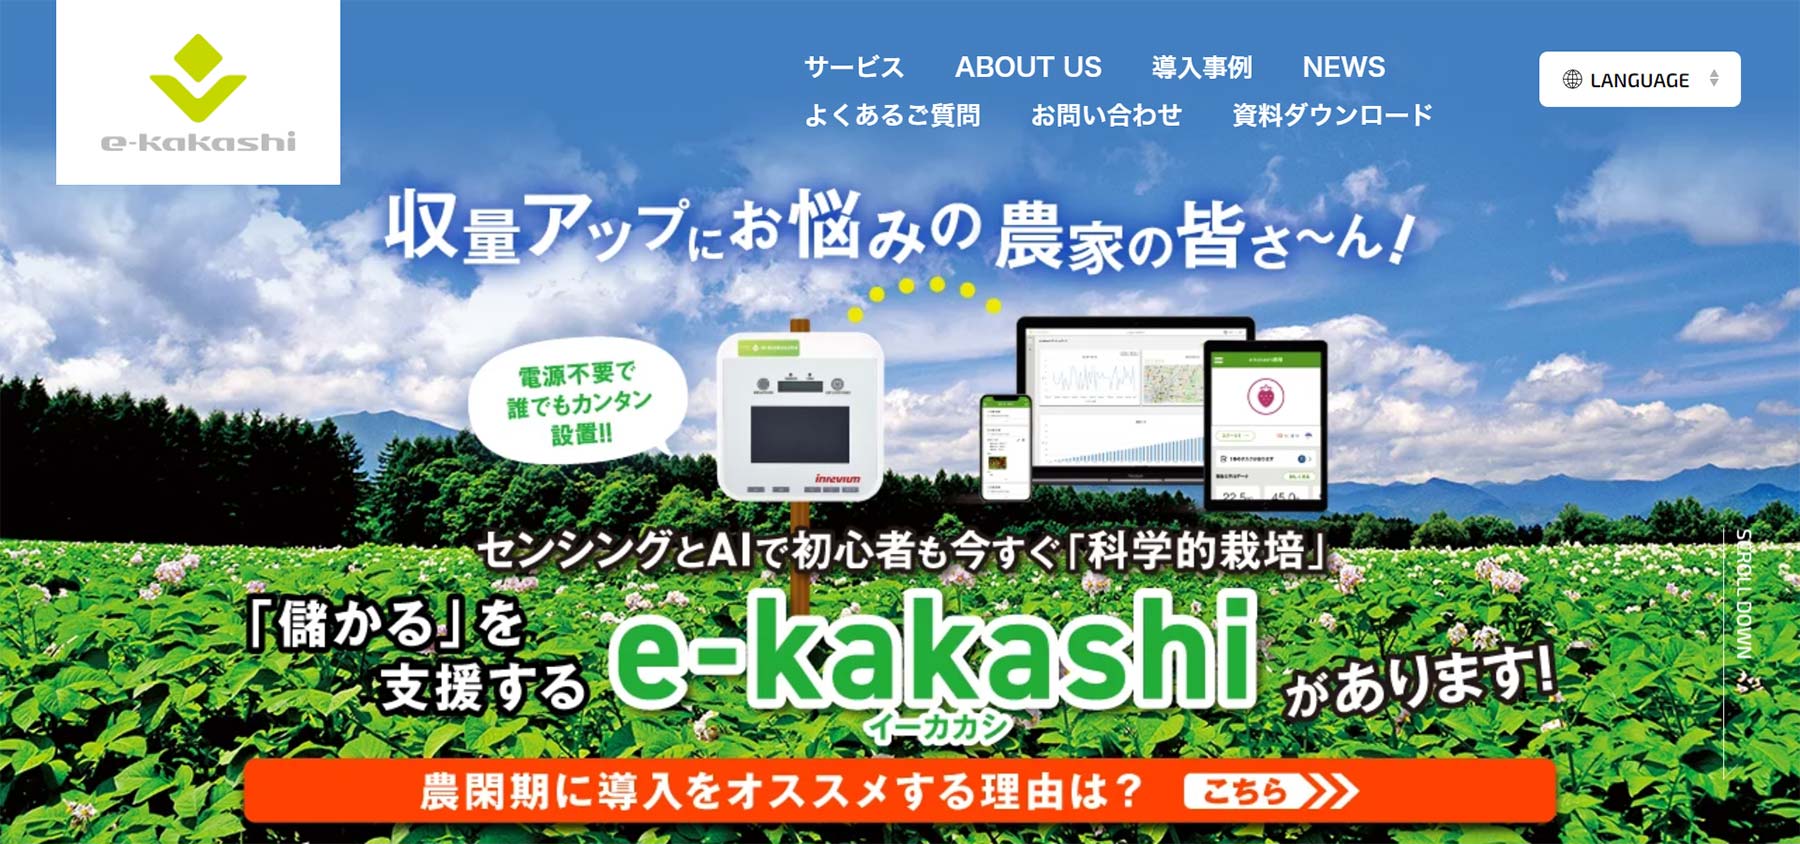 e-kakashi公式Webサイト